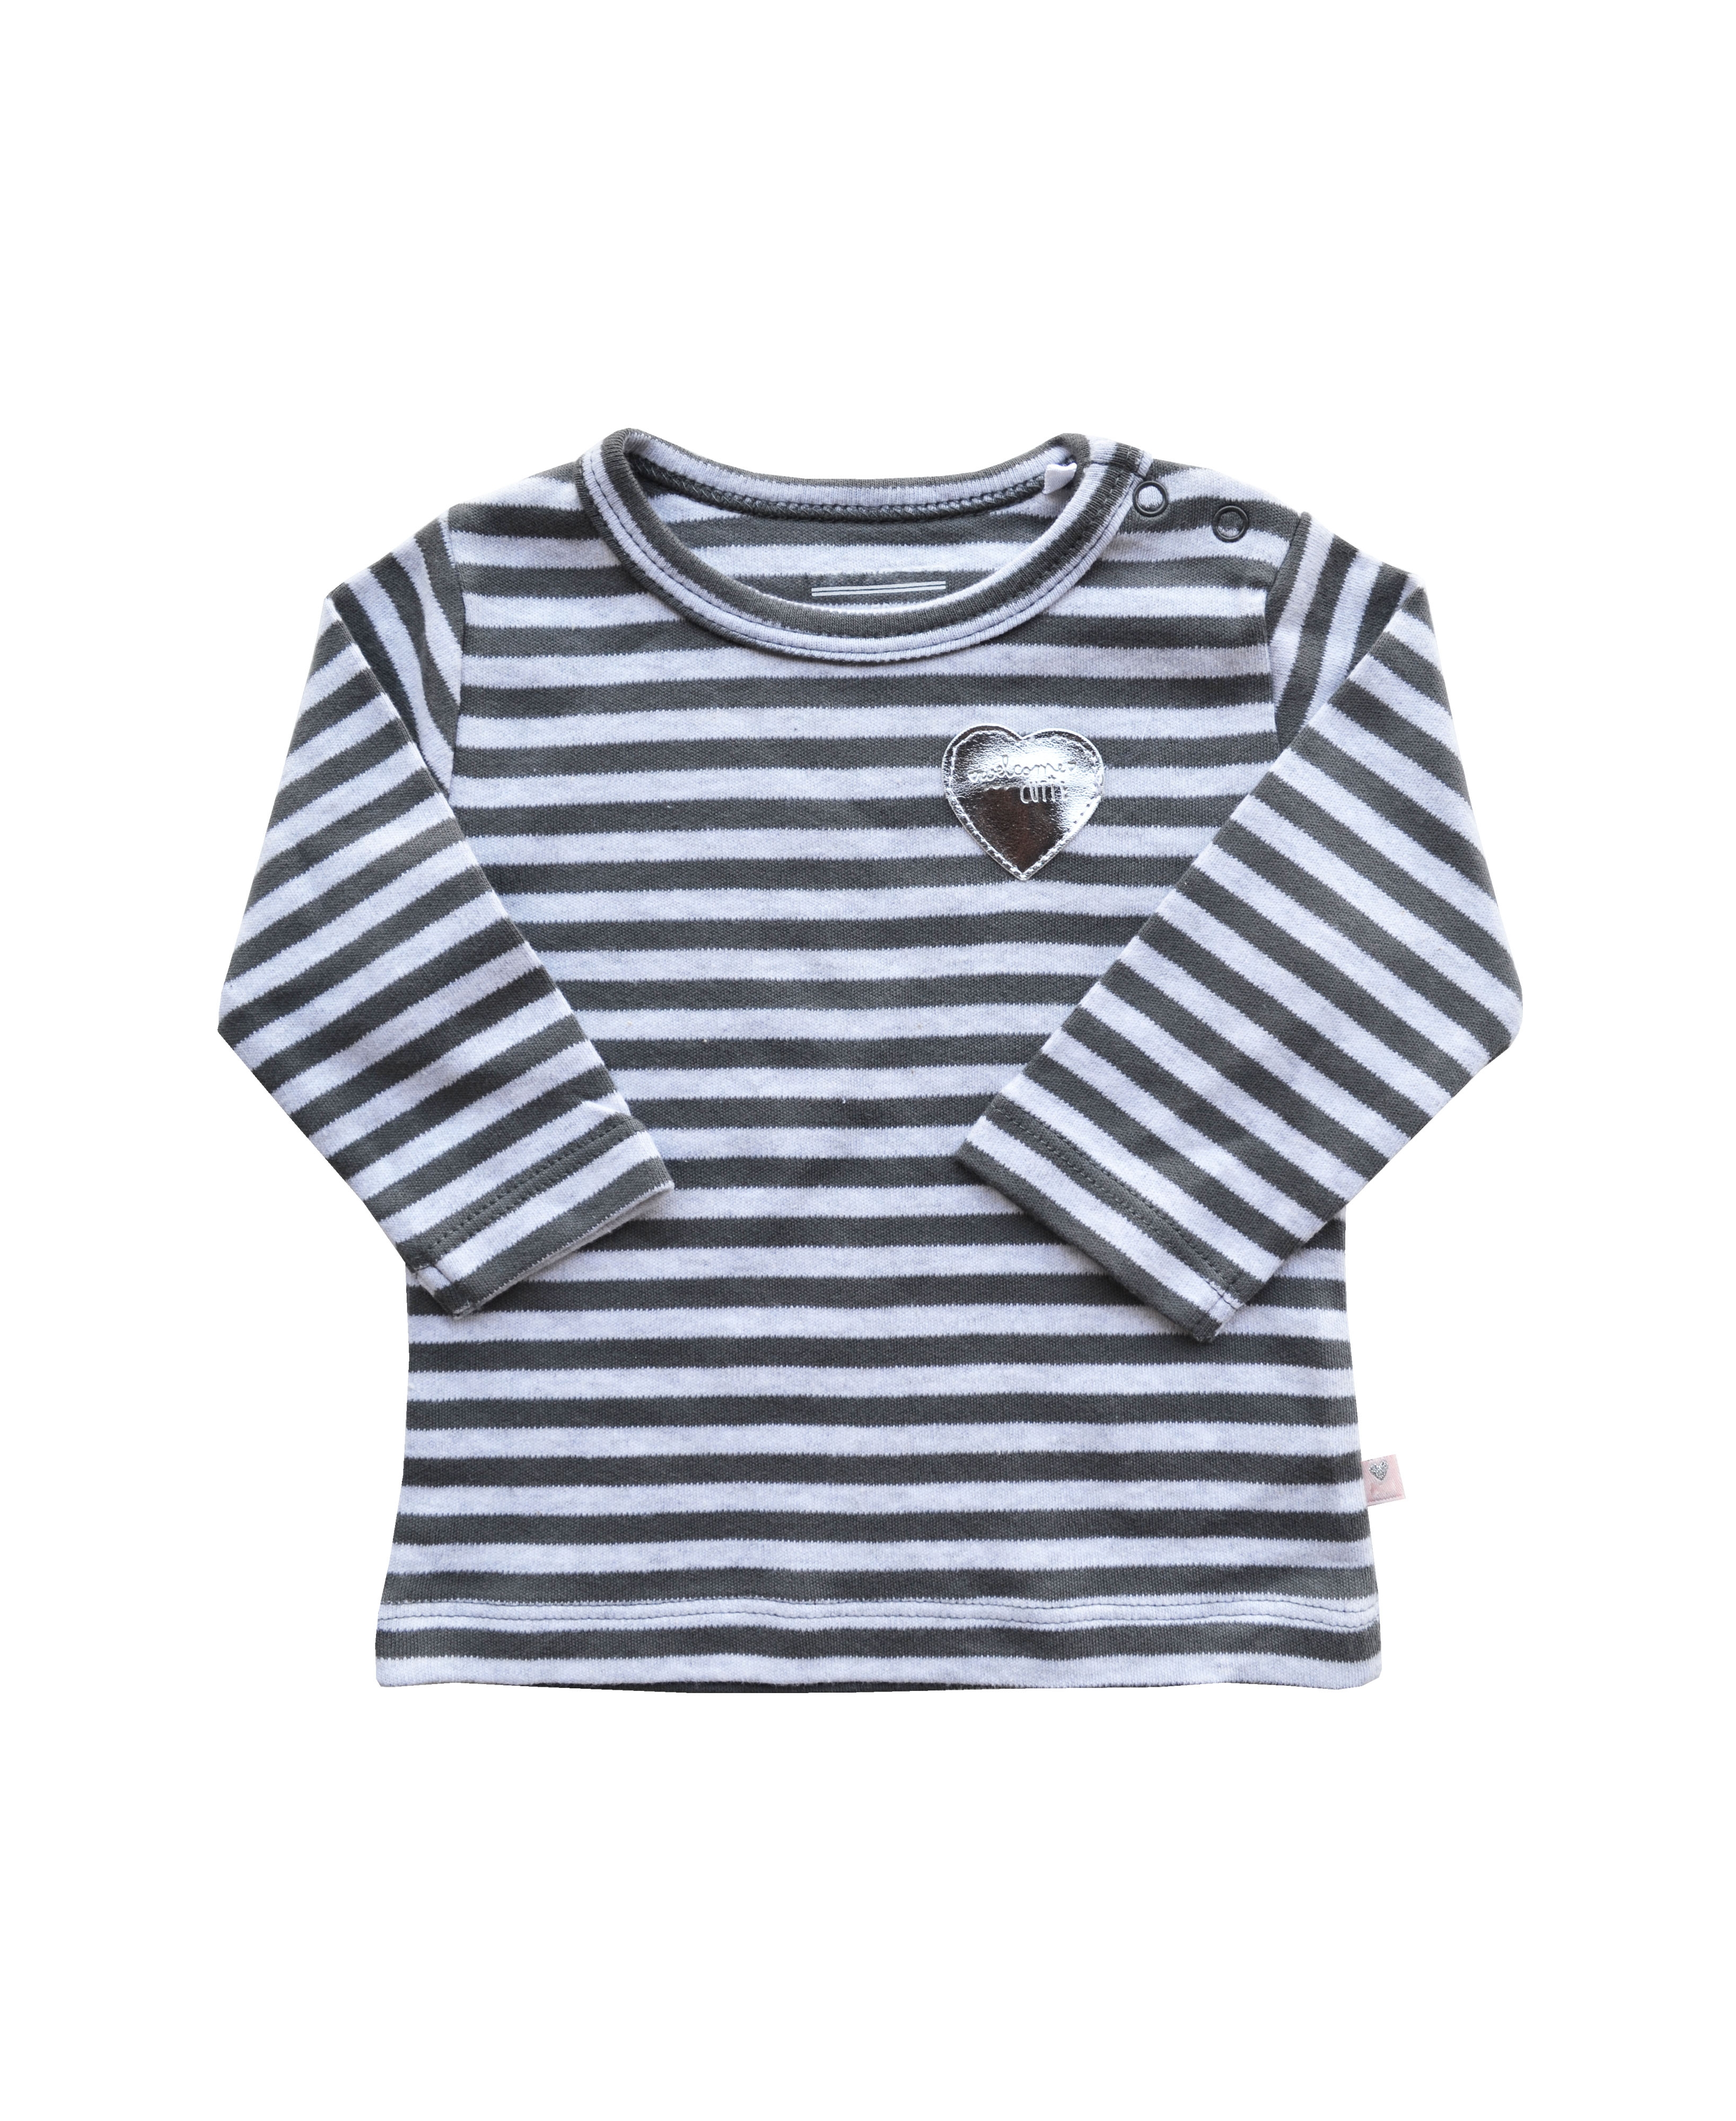 Babeez | Grey Striped T-shirt with Silver Heart Patch (100% Cotton Interlock Biowash) undefined